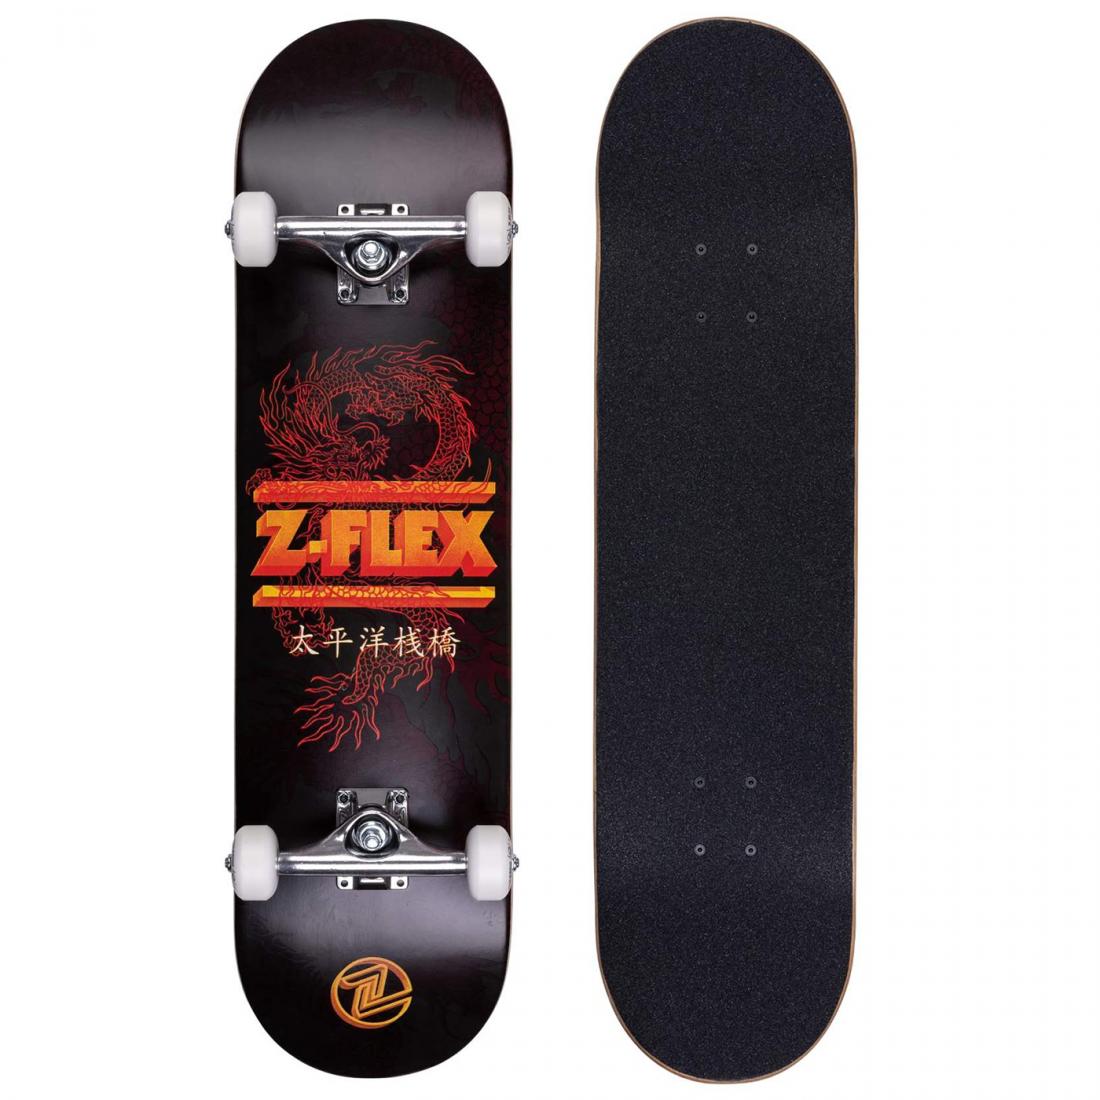 Комплект скейтборд DRAGON Z-Flex, цвет черный 1, размер 8.25 - фото 1